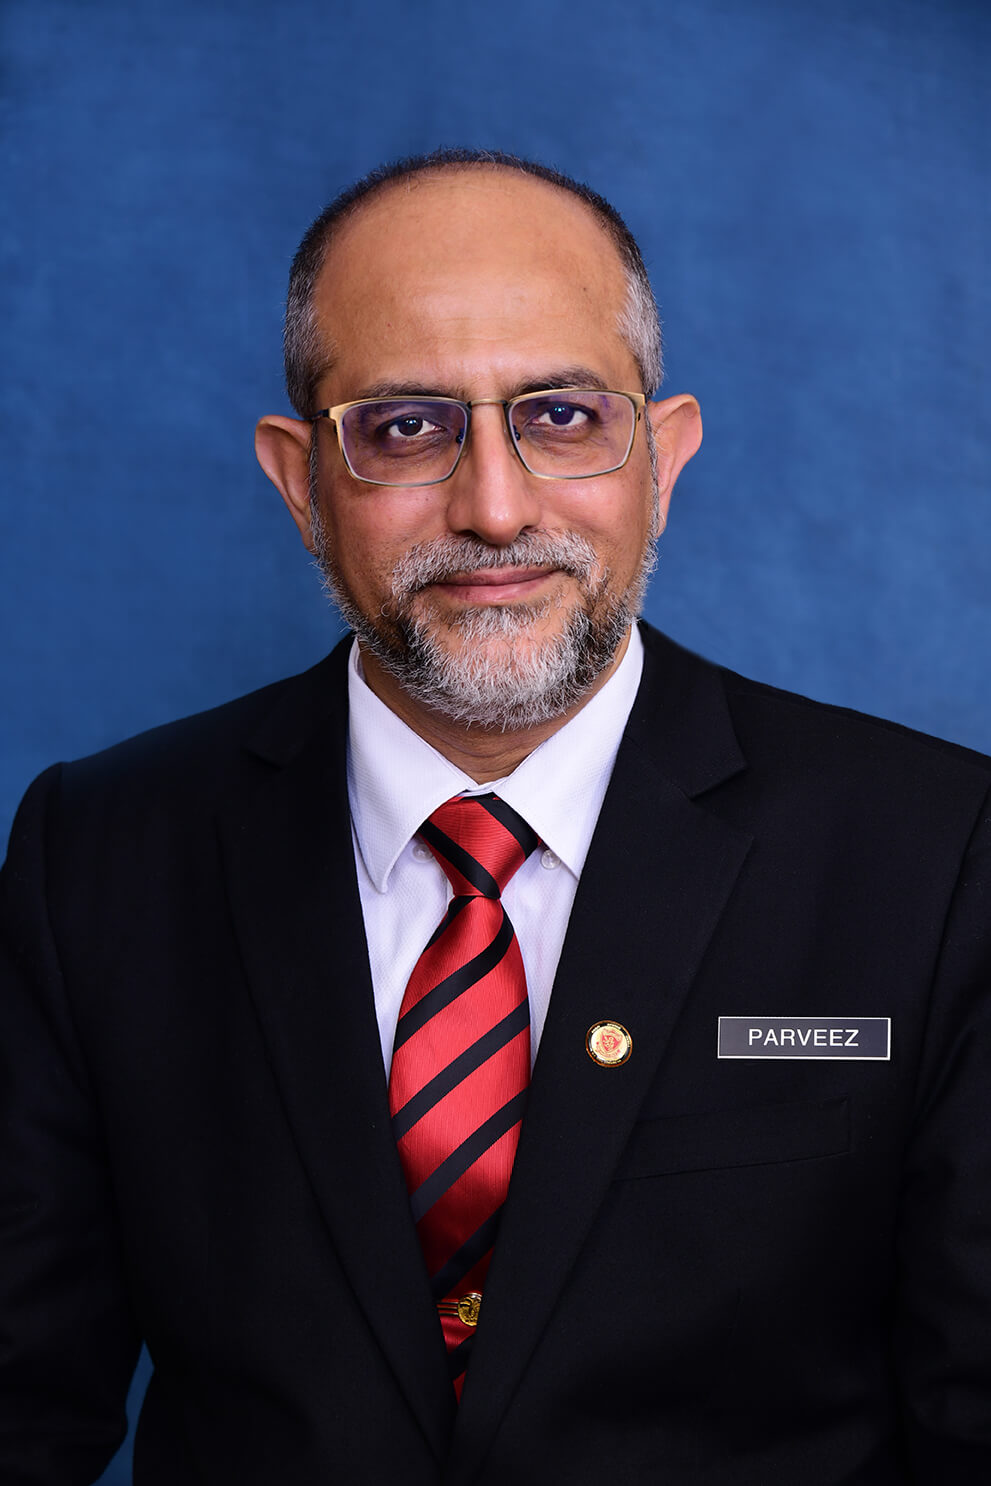 Dr. Ahmad Parveez profile